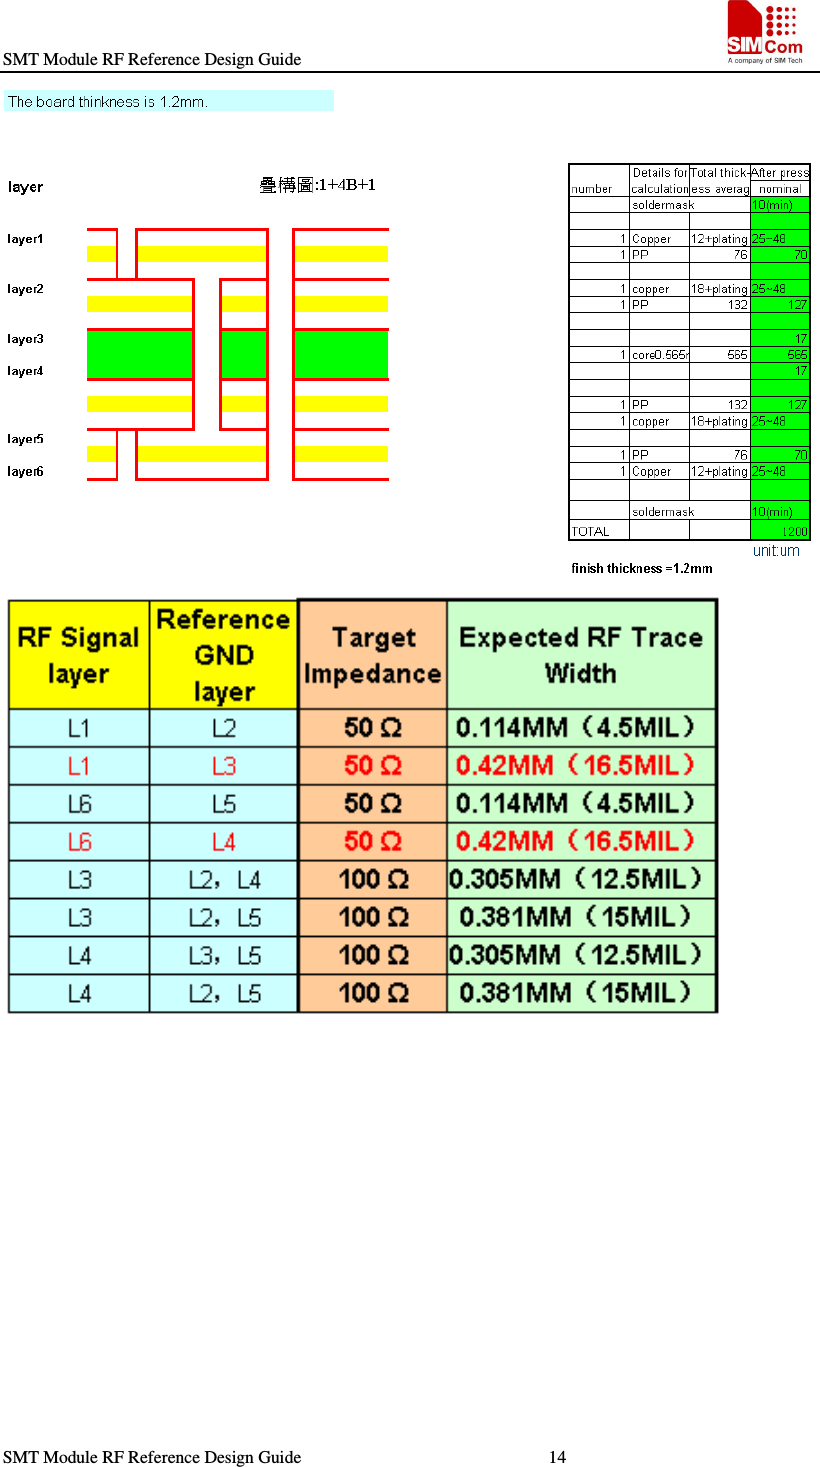 SMT Module RF Reference Design Guide                                                    SMT Module RF Reference Design Guide                                                        14                                                                      